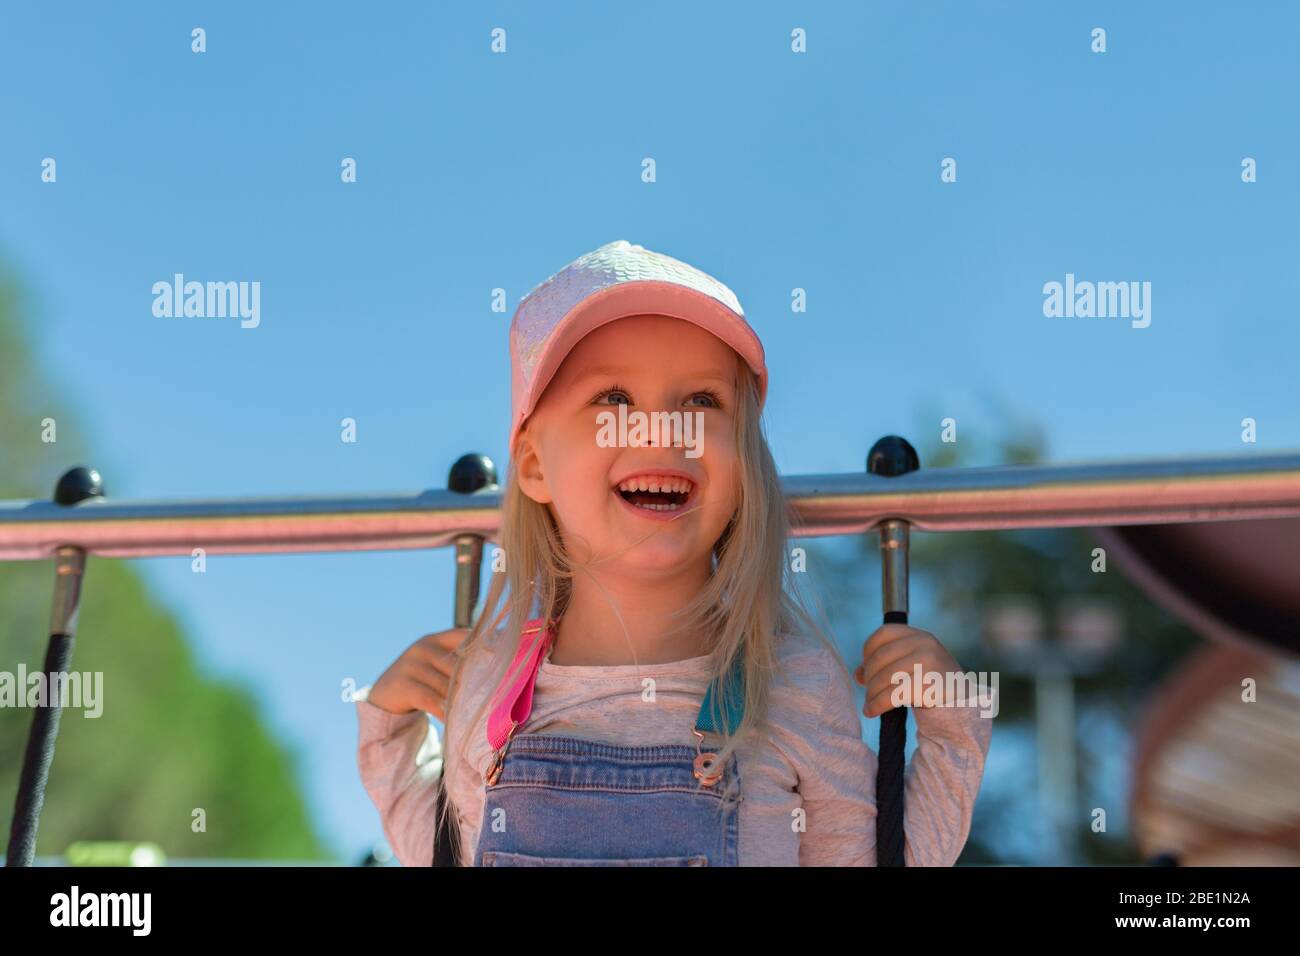 Porträt von glücklichen blonde 4 Jahre Mädchen auf dem Spielplatz spielen Stockfoto